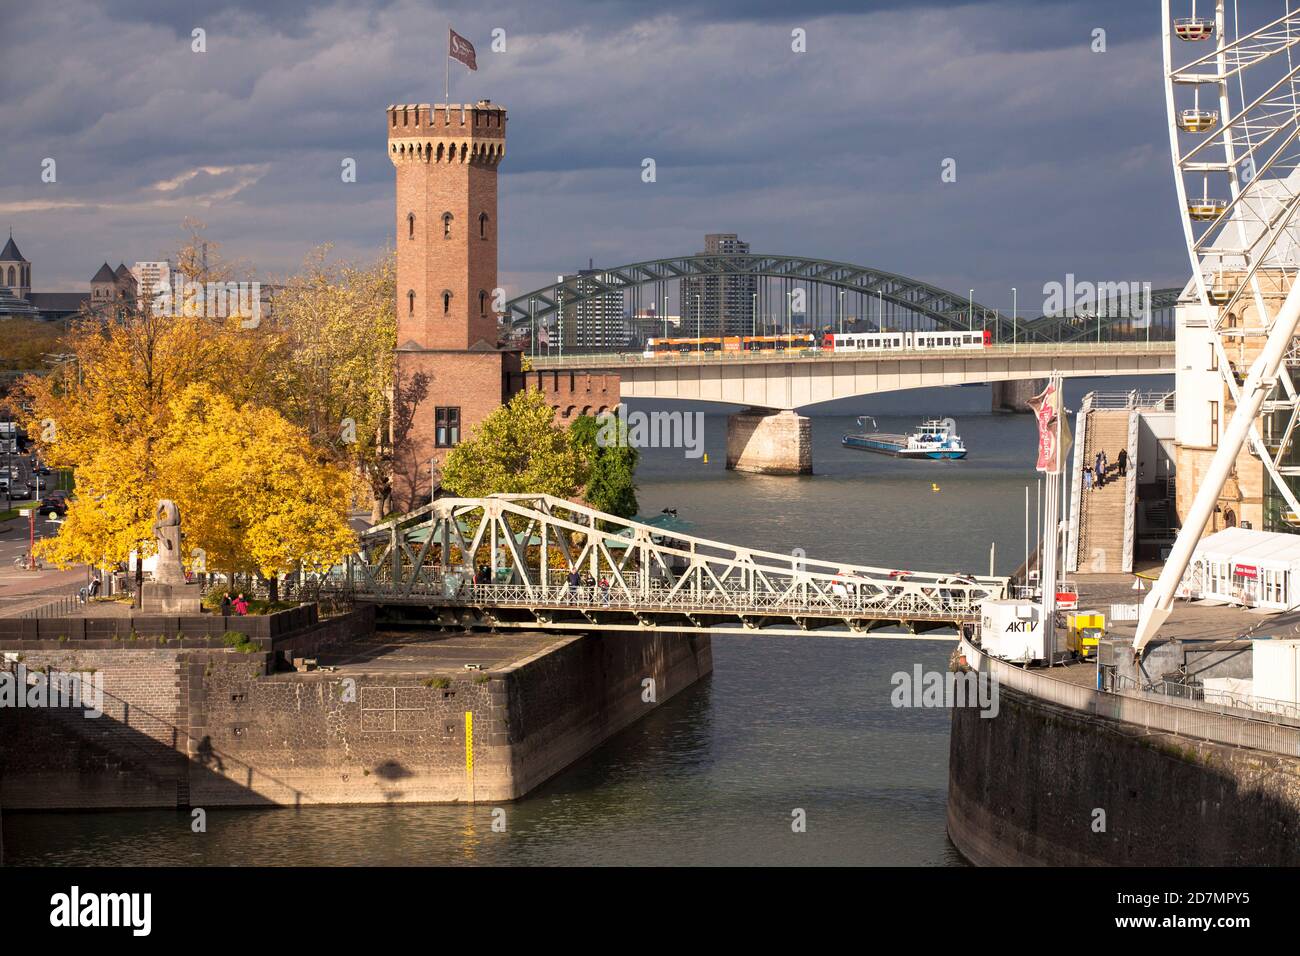 Malakoffturm und Schaukelbrücke am Rheinauer Hafen, Deutzerbrücke, Hohenzollernbrücke, Köln, Deutschland. Malakoffturm und Drehbrücke am Rheinauha Stockfoto